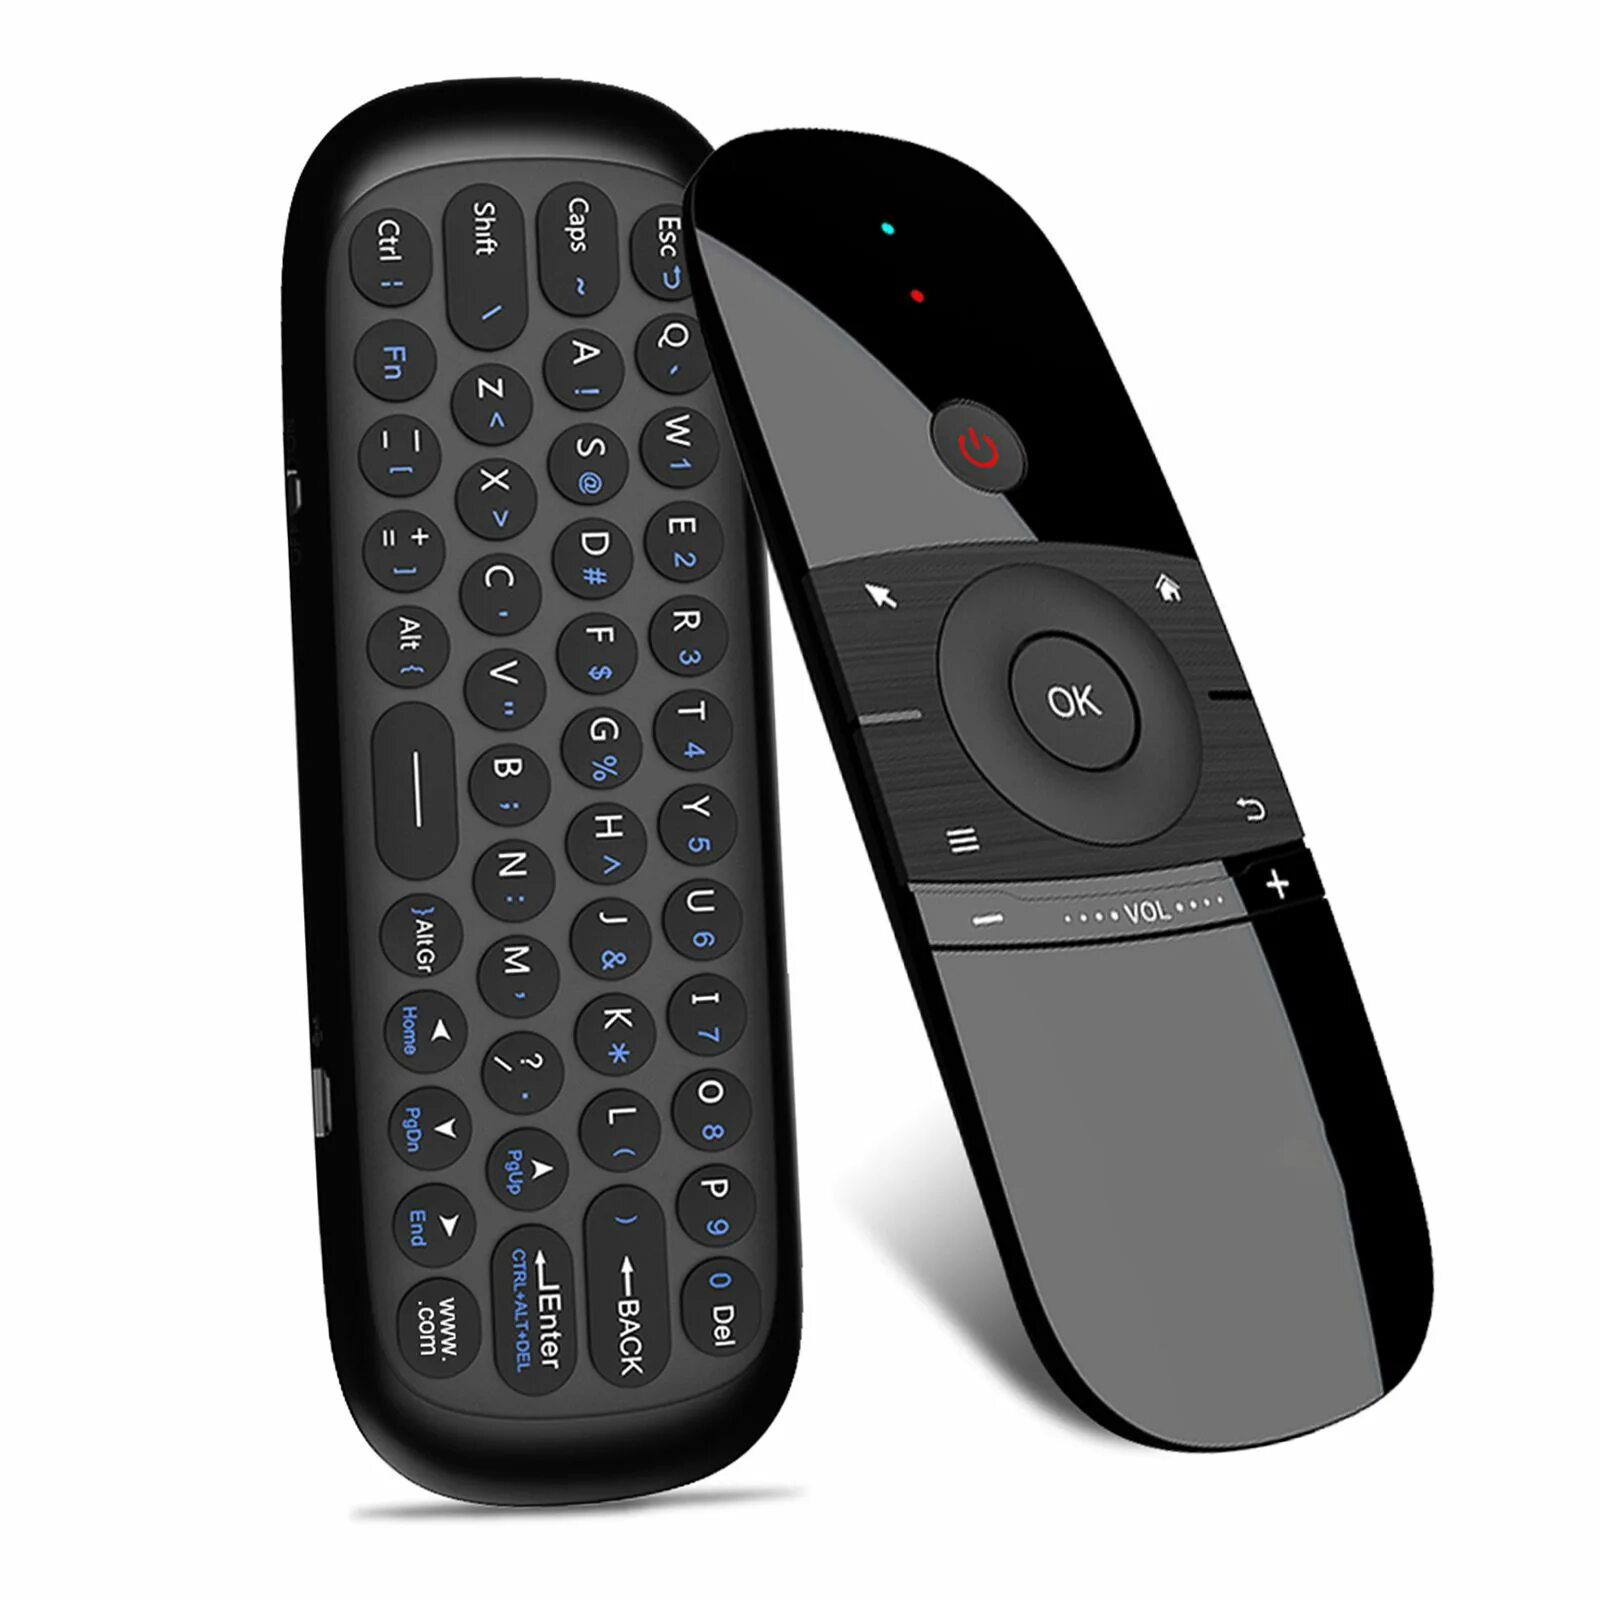 Пульт w1 Air Mouse. W1 2.4g Wireless Keyboard Air Mouse Smart Remote Control for Android TV Box PC. Air Mouse аэромышь w1. Пульт аэромышь для смарт ТВ.